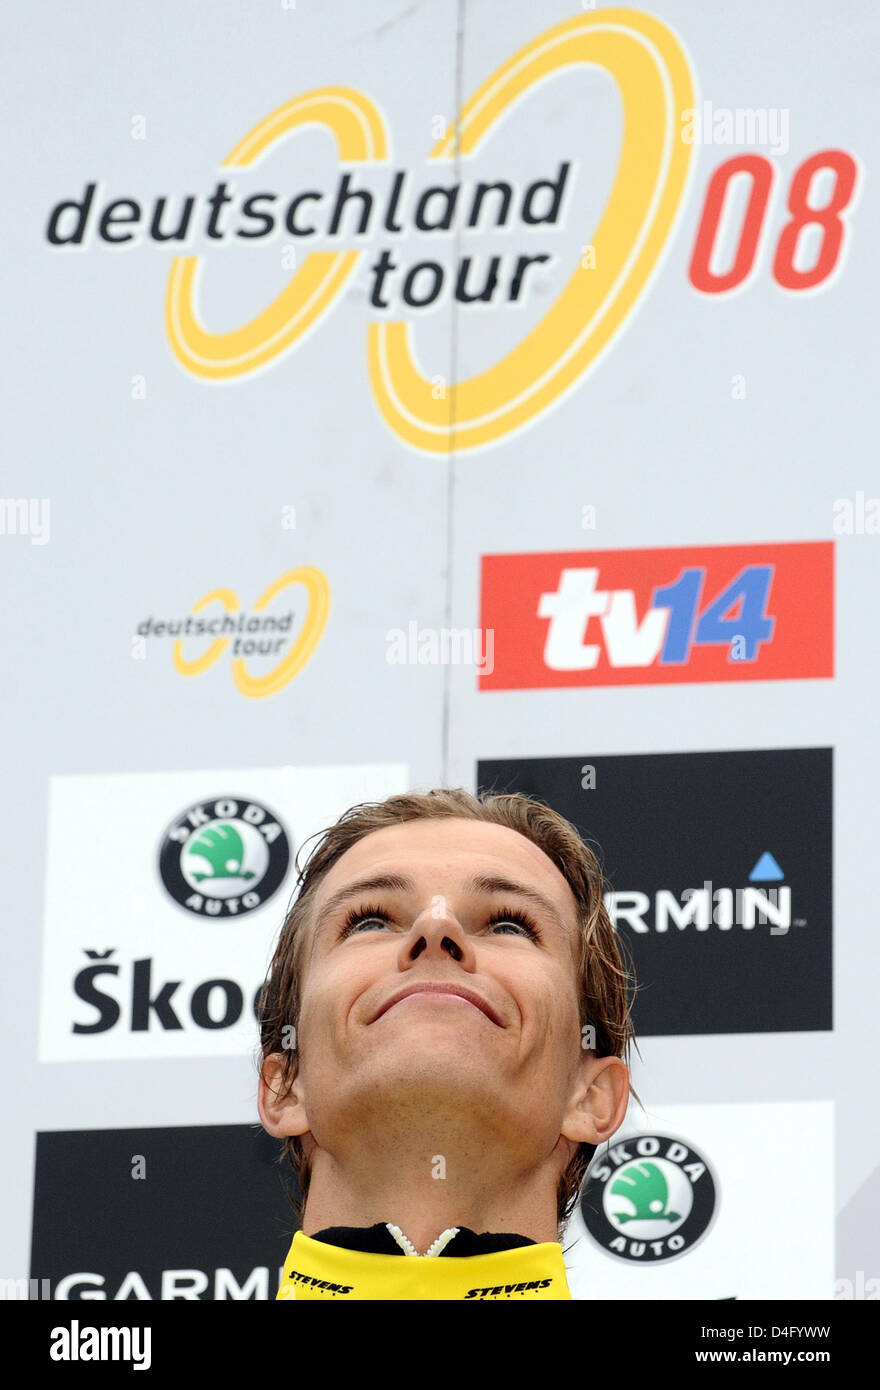 Ciclista tedesco Linus Gerdemann del Team Columbia è mostrato dopo l'ottavo e ultimo stadio (un unico tempo di gara di prova di 34 chilometri) del Giro di Germania a Brema, Germania, 06 settembre 2008. Gerdemann ha vinto la gara che si è conclusa dopo 1,408.6 chilometri di Brema. Foto: Bernd Thissen Foto Stock